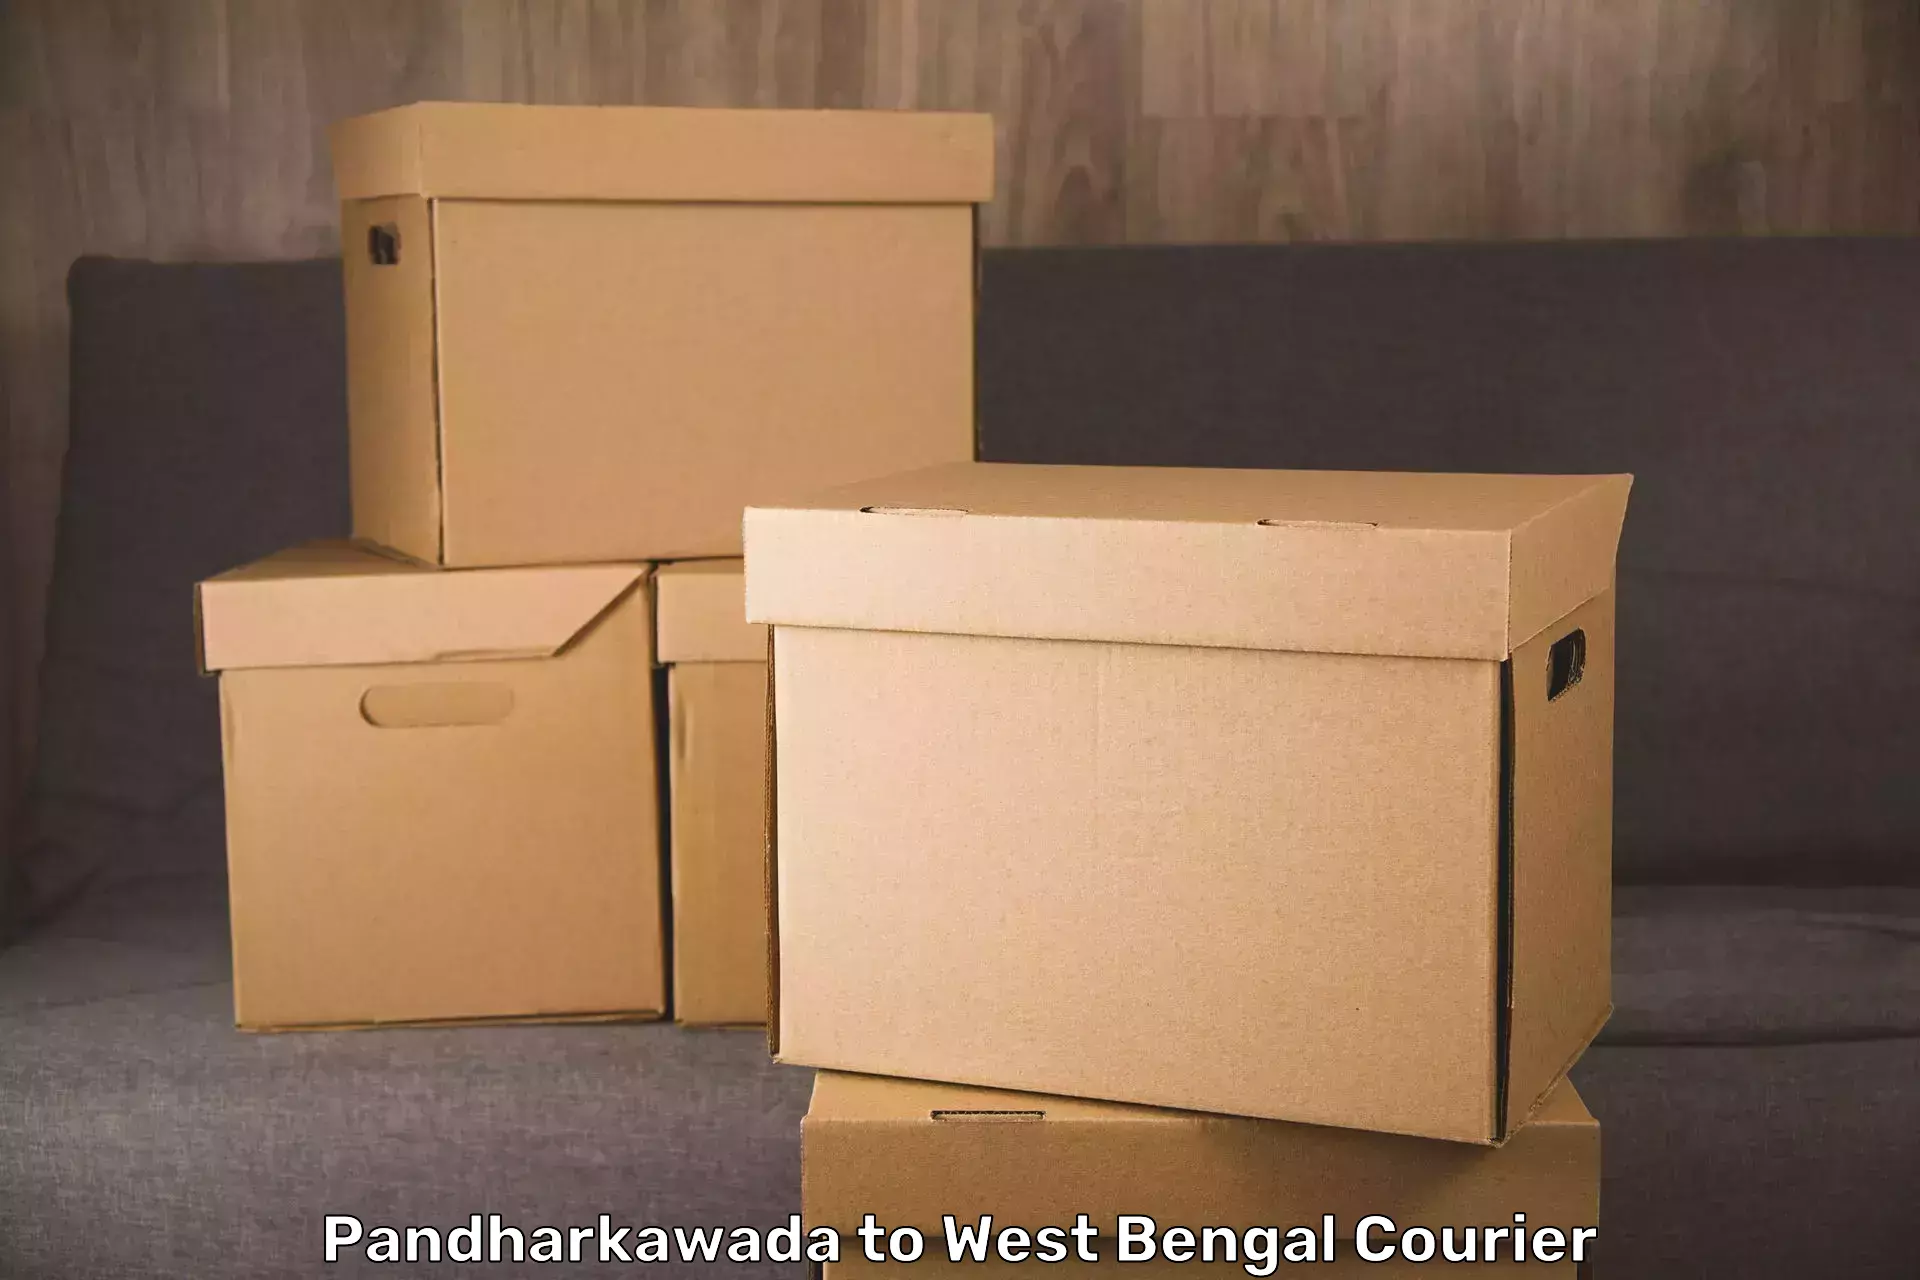 Baggage transport network Pandharkawada to West Bengal